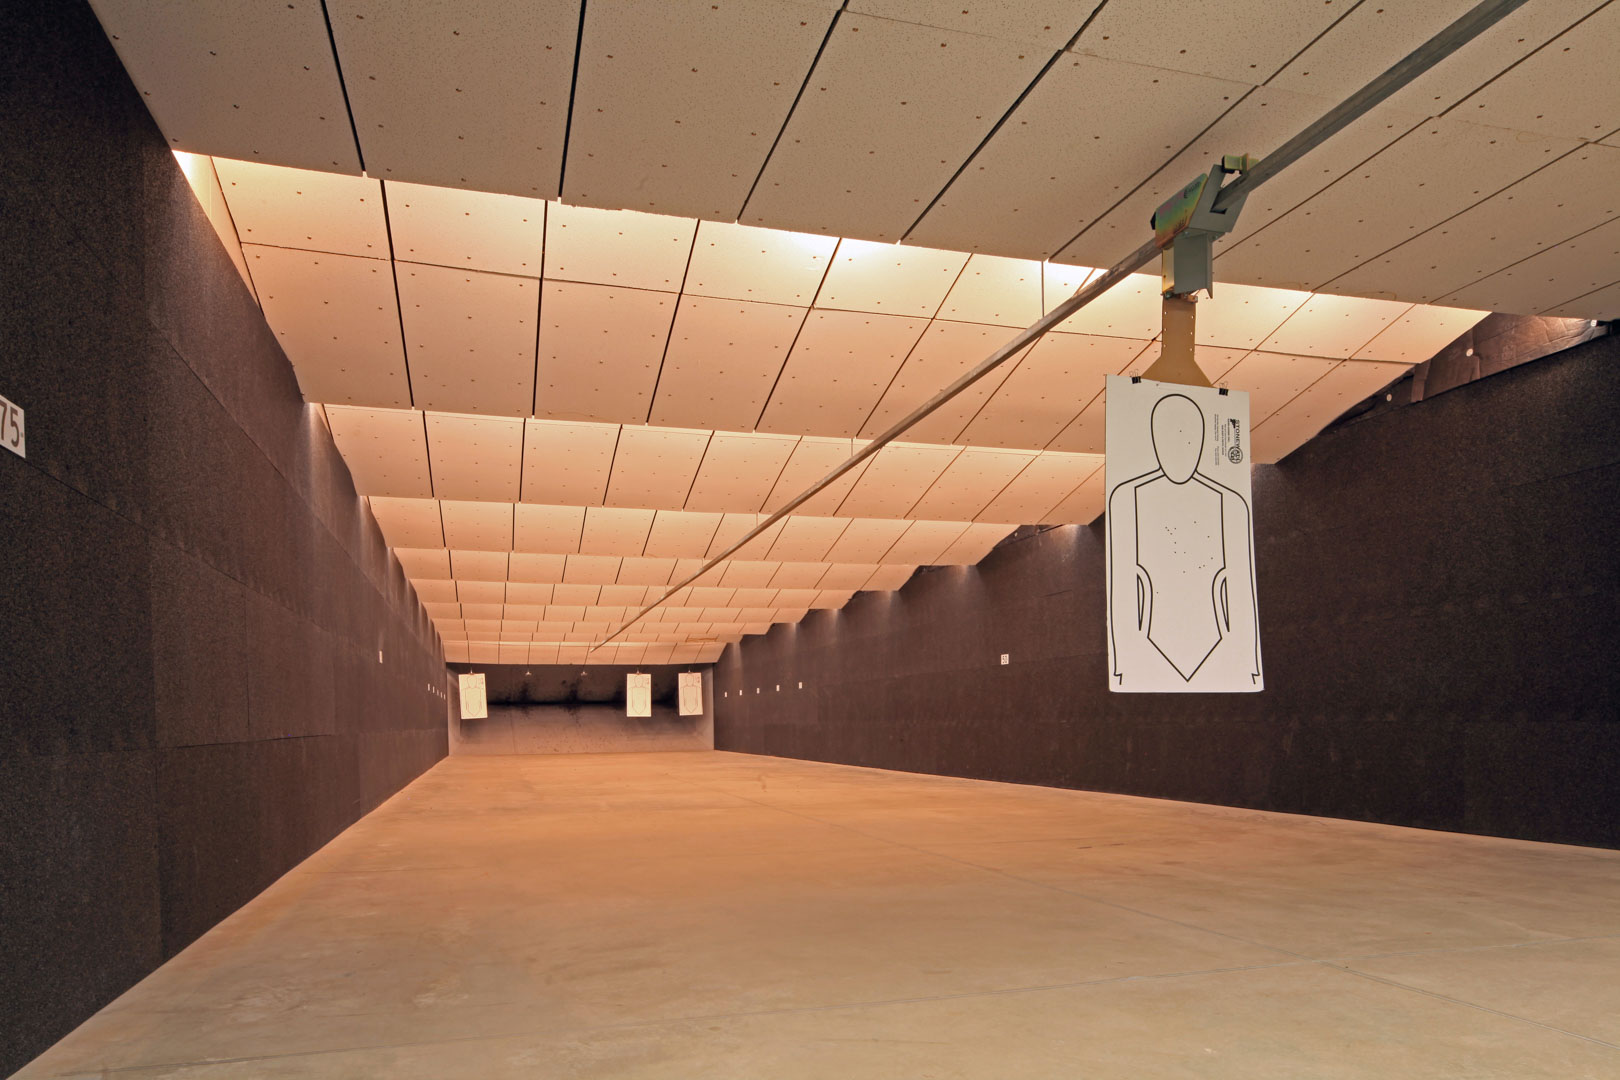 Indoor firing range